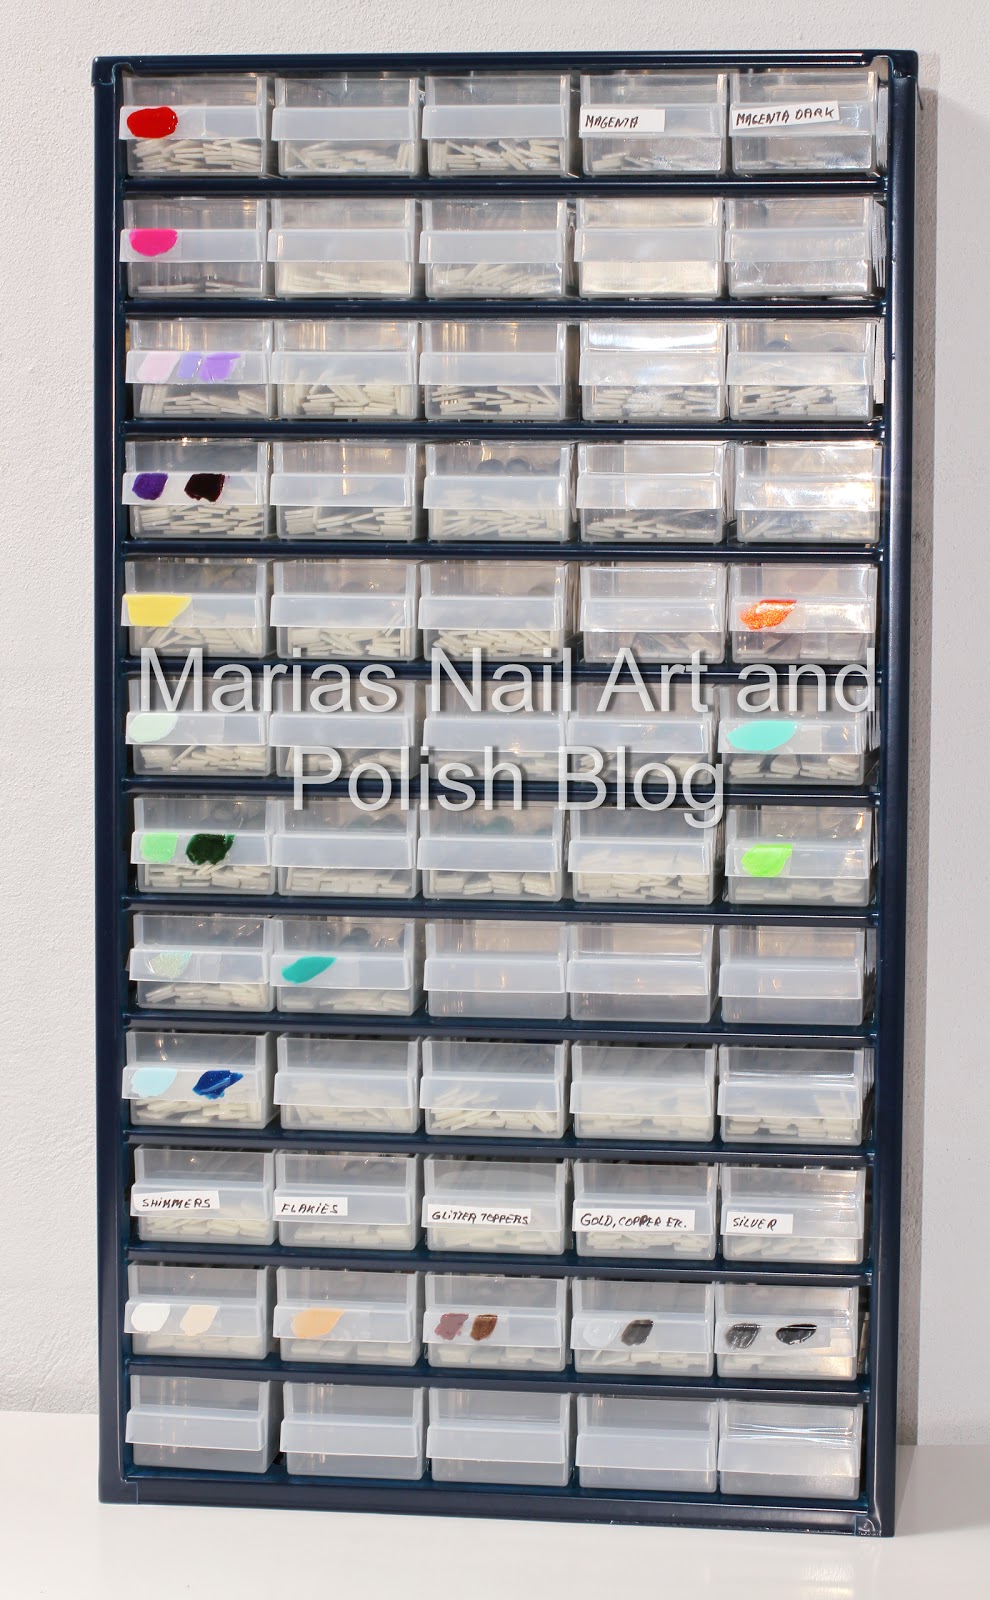 Marias Nail Art And Polish Blog 1 300 Nail Polishes On Swatch